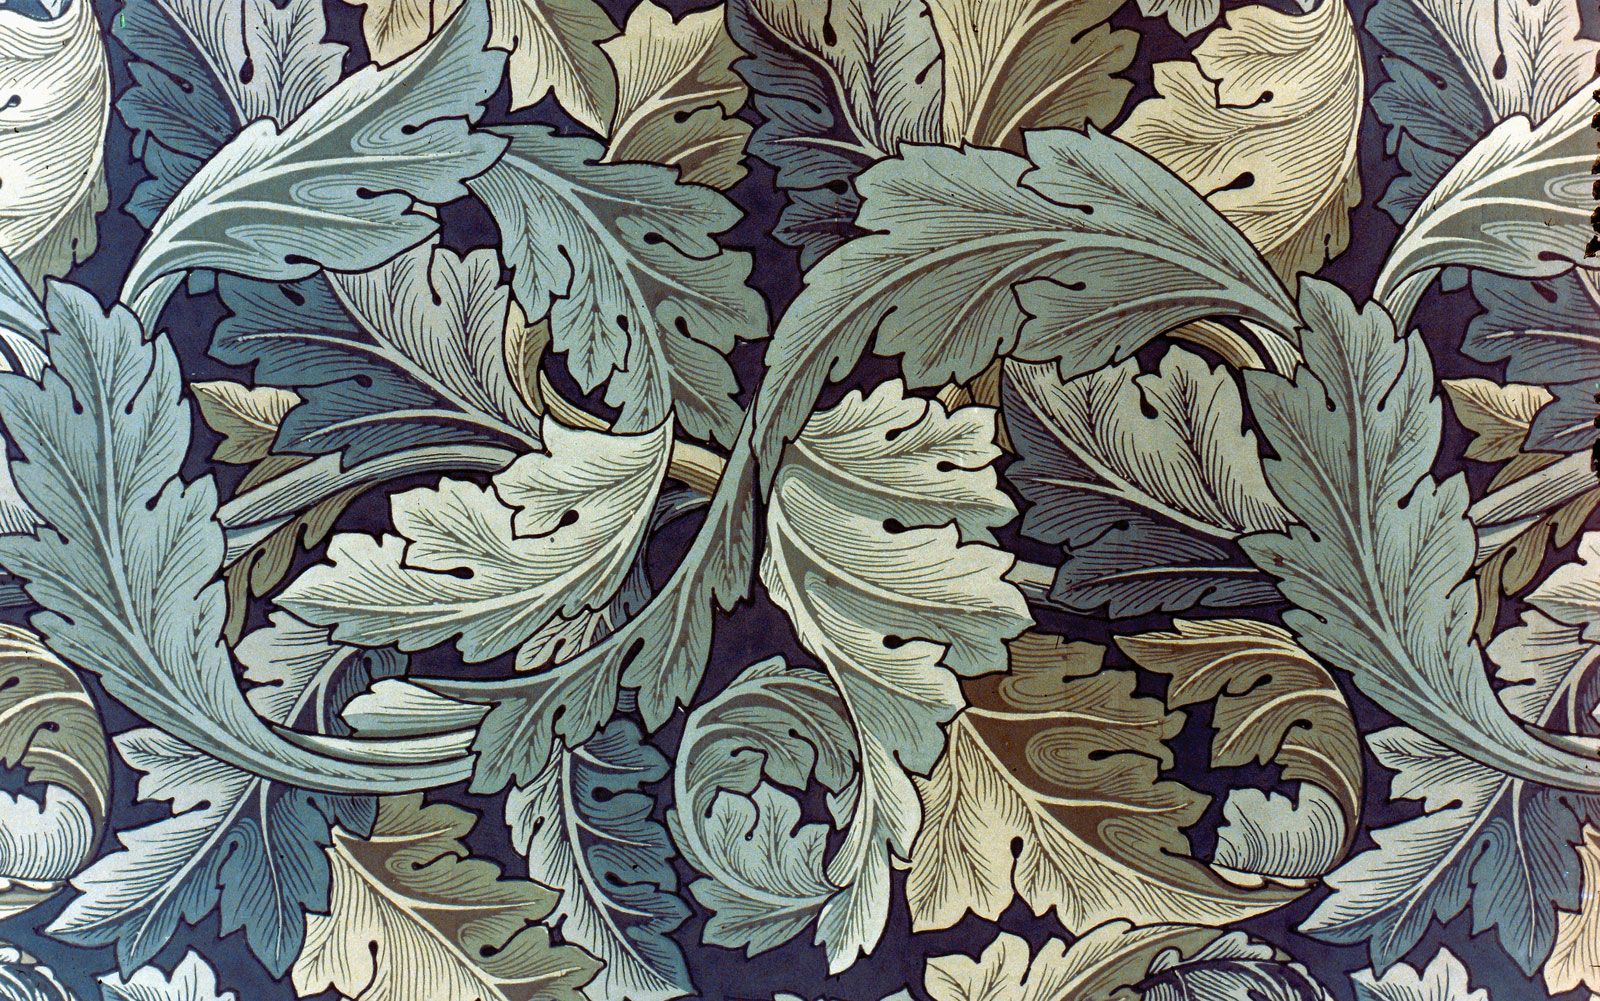 William Morris' iconic patterns are recognizable. Designed during 1800